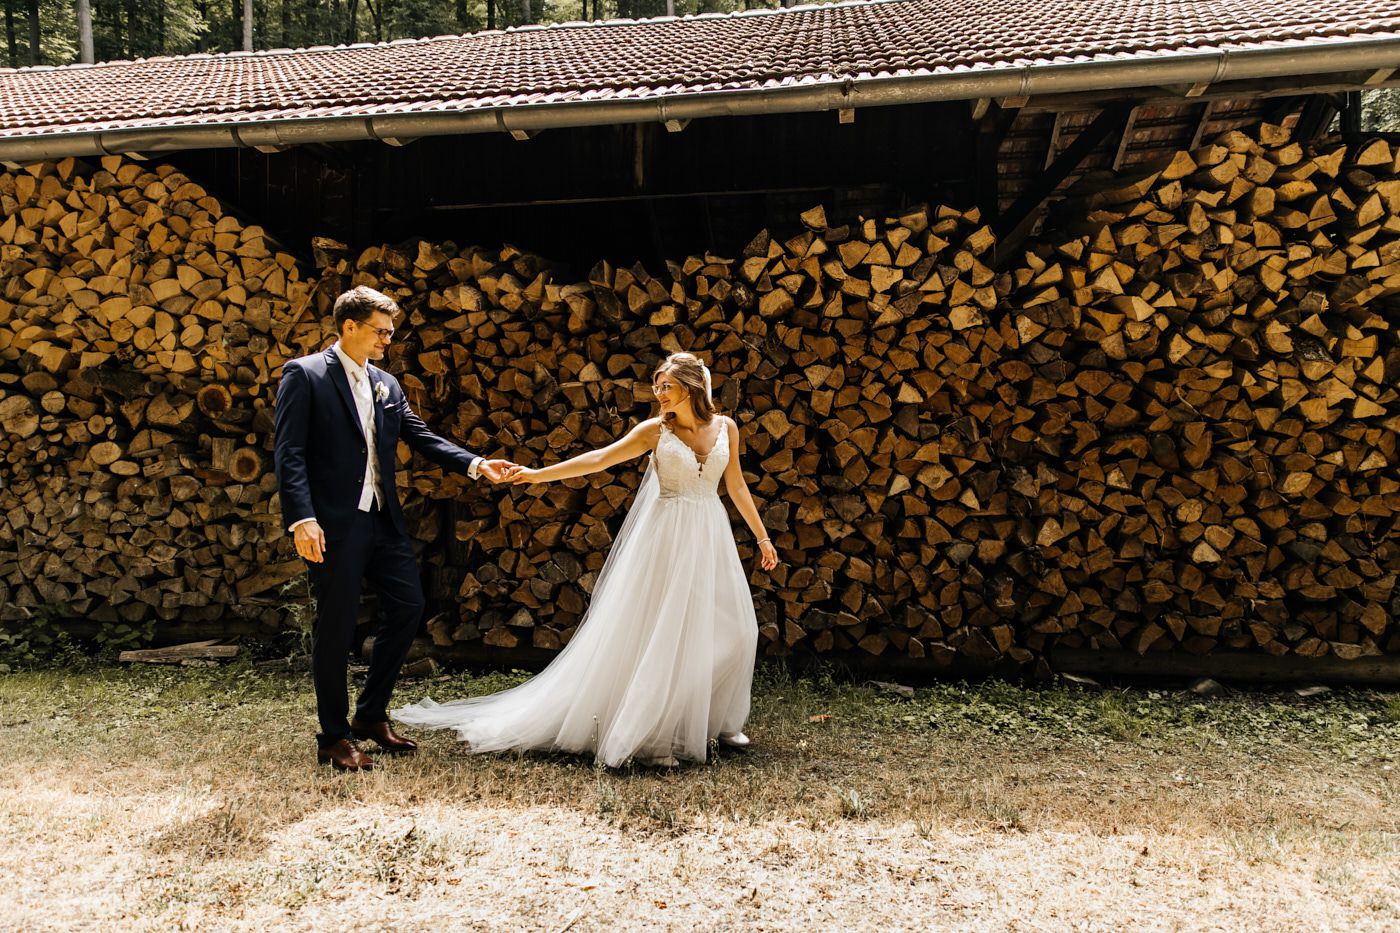 Fotoshooting am Hochzeitstag auf dem Bauernhof. Brautpaar geht an dem Holzunterstand Hand-in-Hand. 